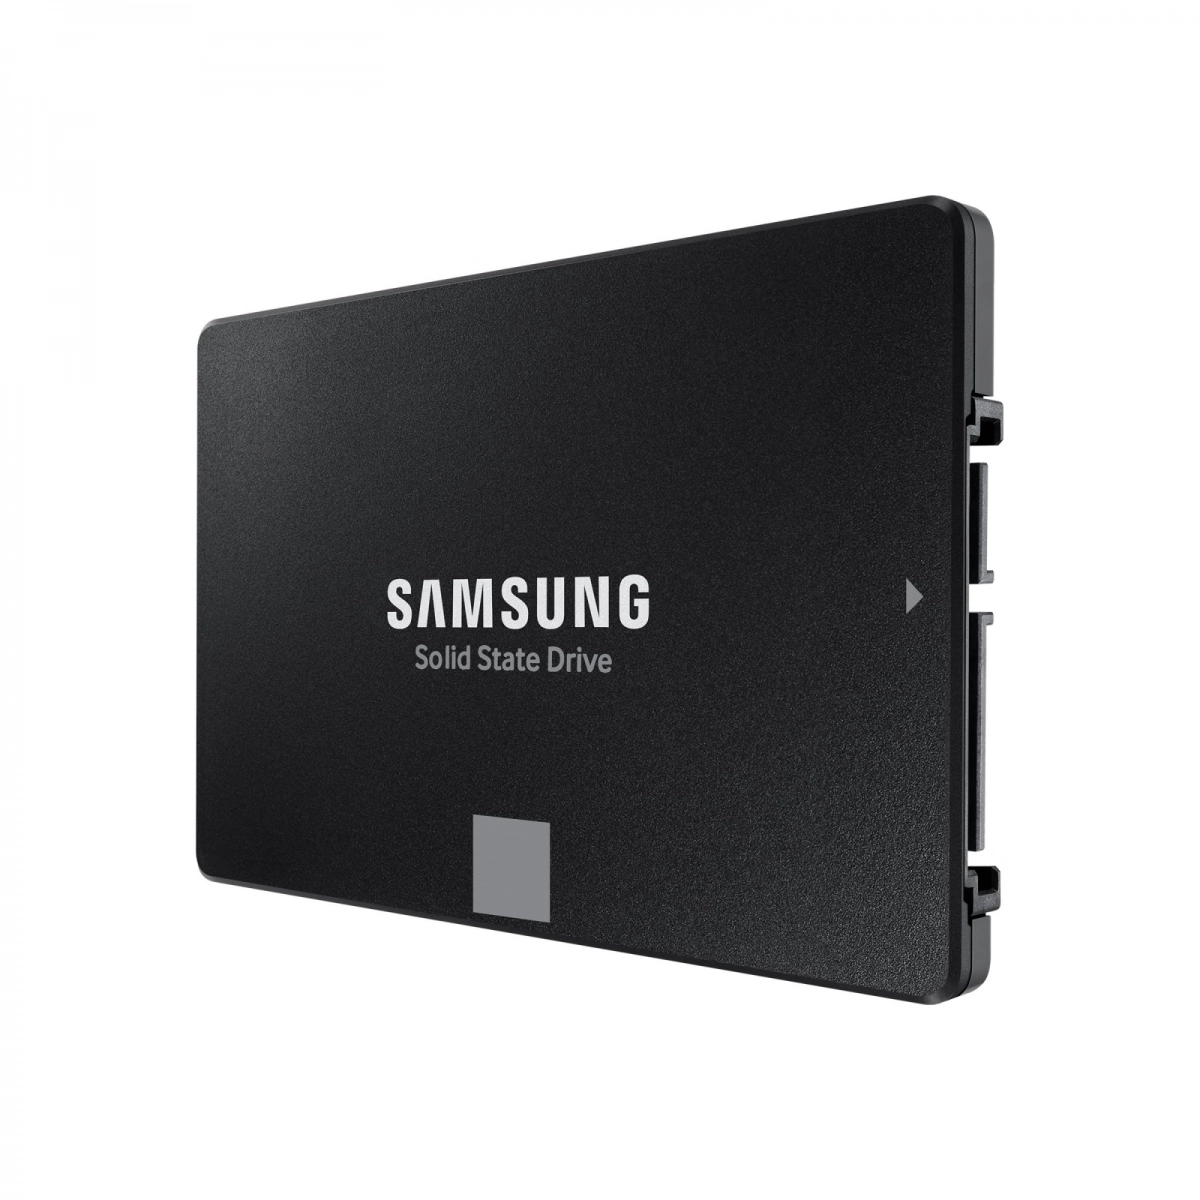 Notebook-Festplatte 500GB, SSD SATA3 MLC für DELL Latitude E7440